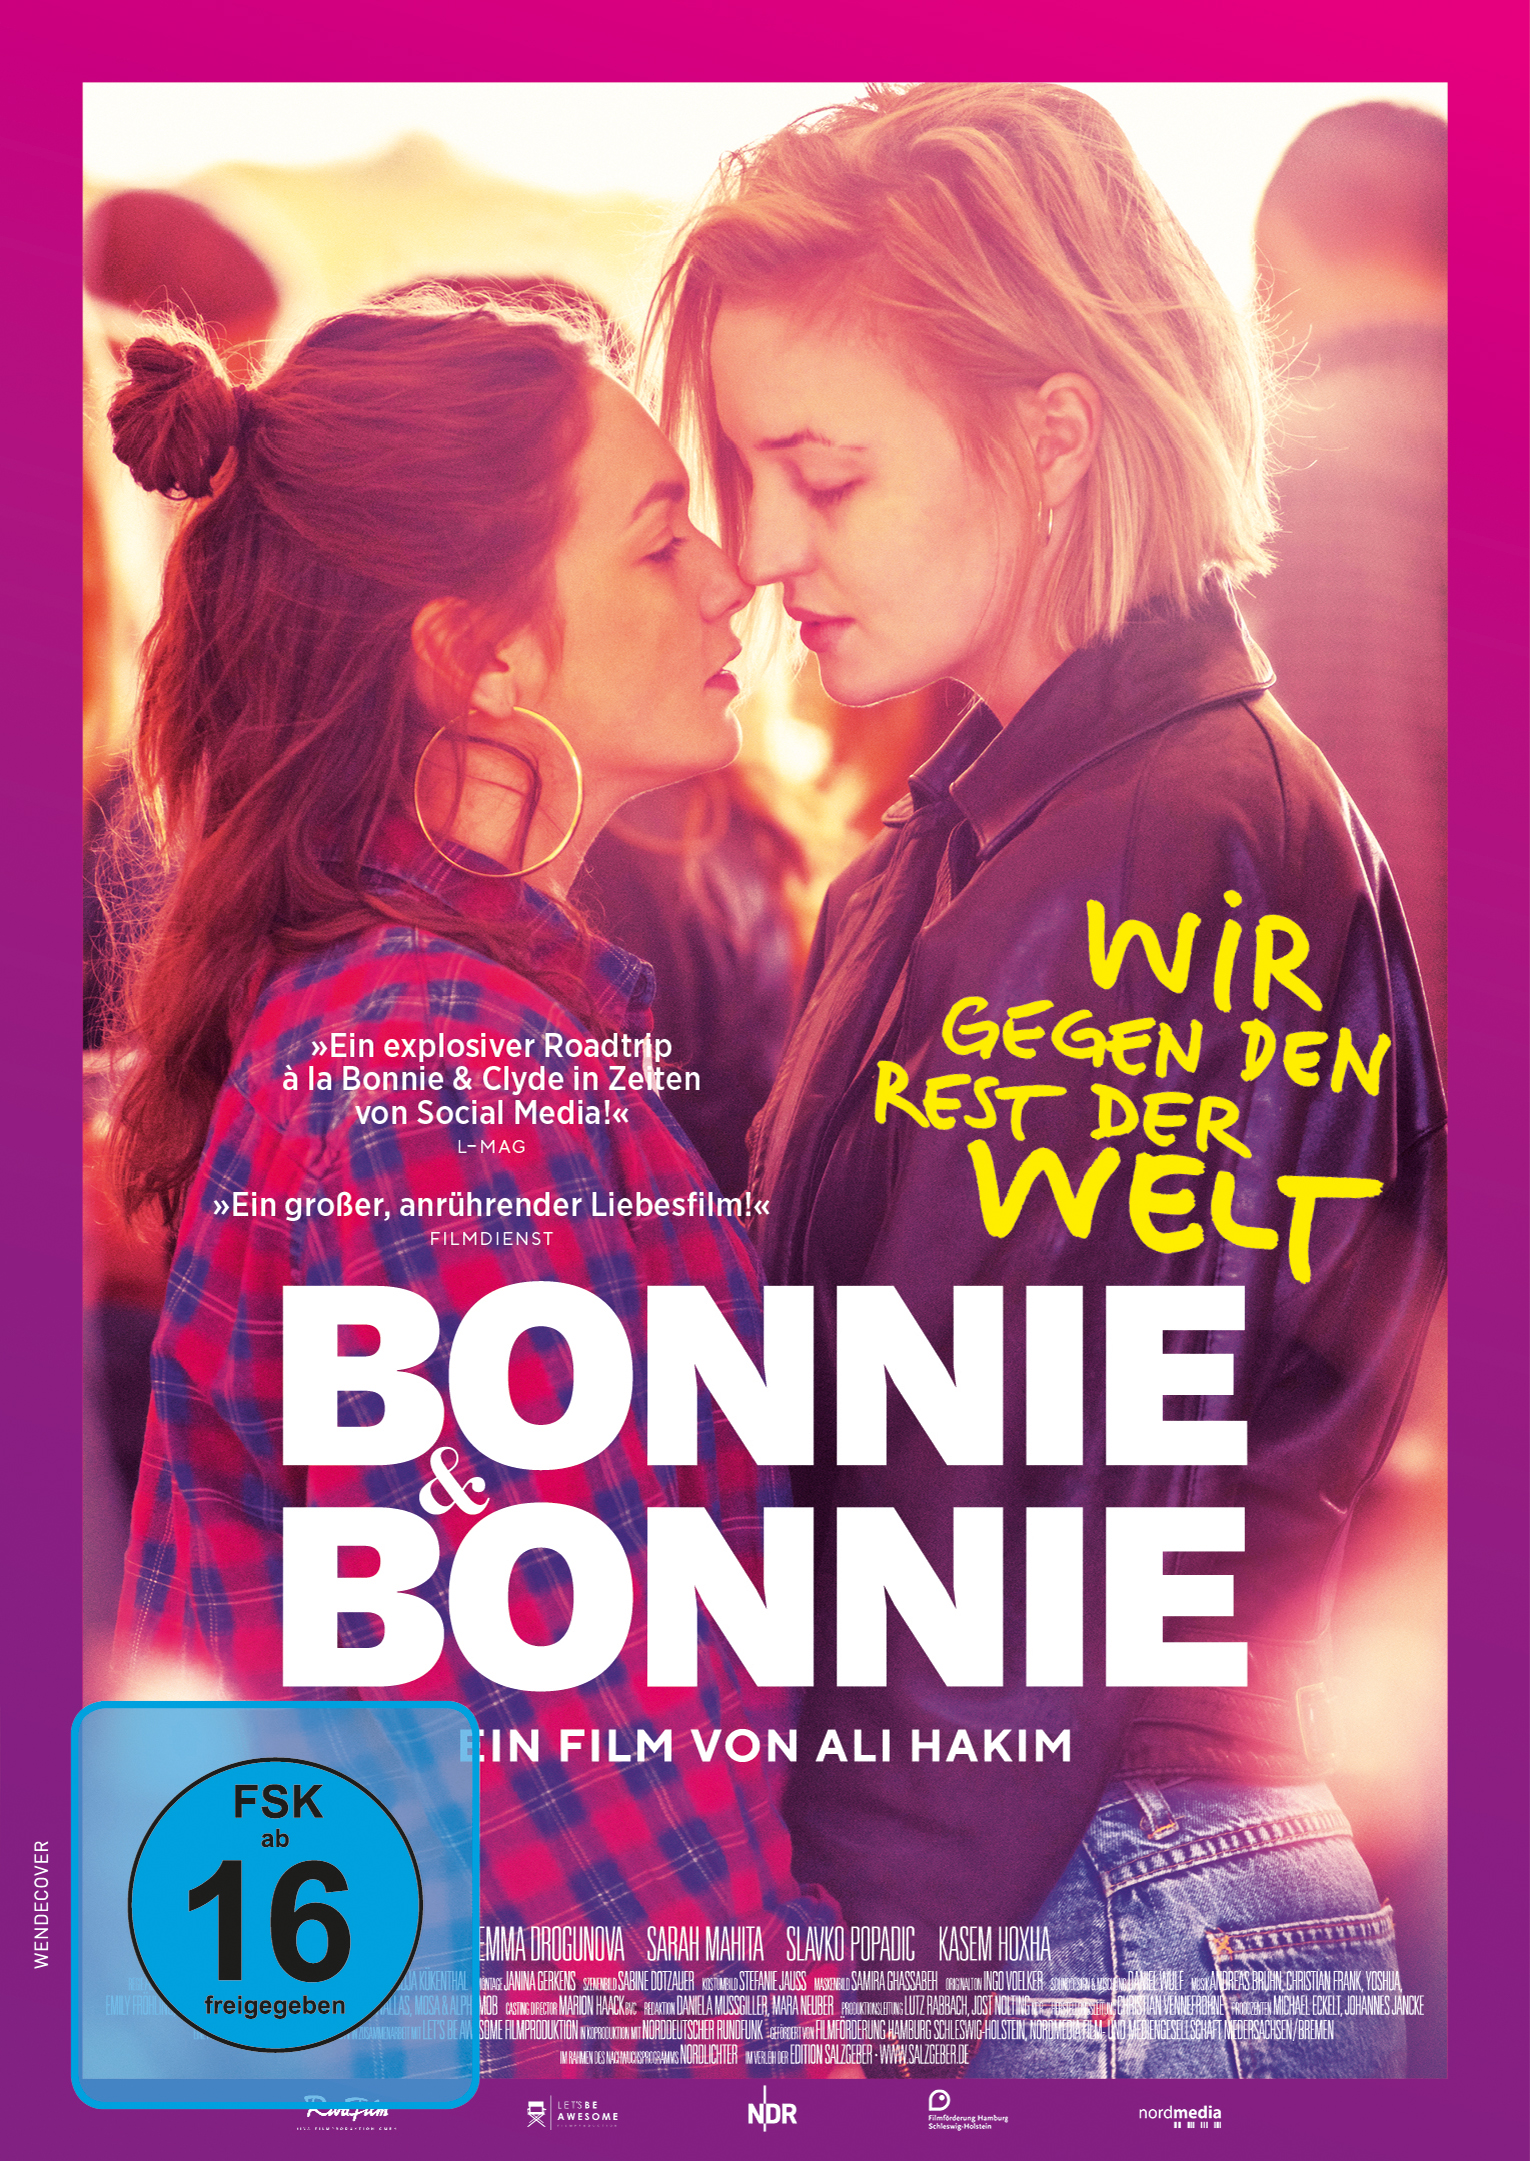 DVD Bonnie & Bonnie